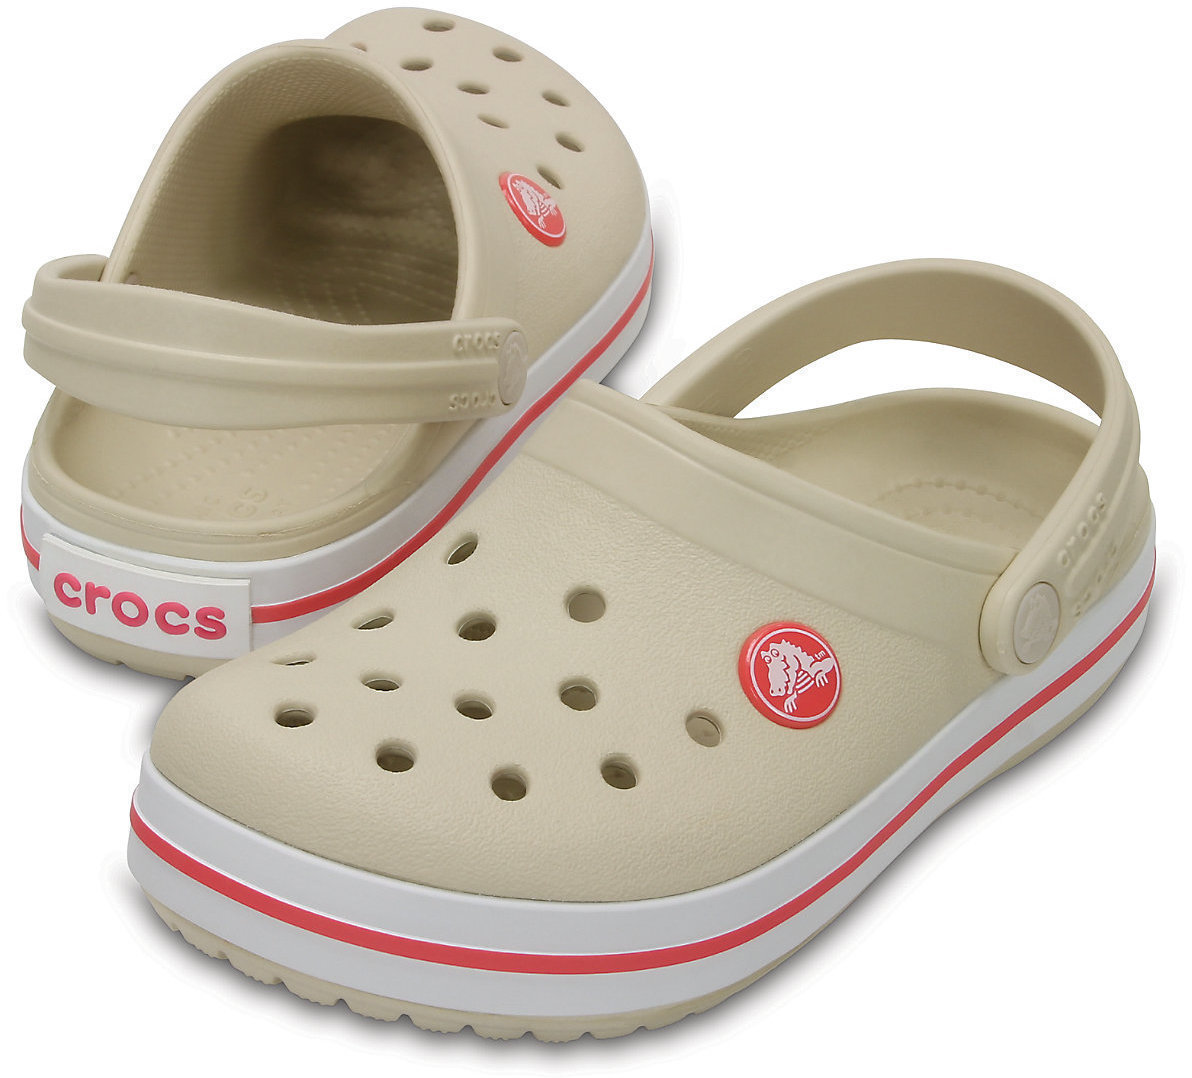 Jachtařská obuv Crocs Kids' Crocband Clog Stucco/Mellon 29-30